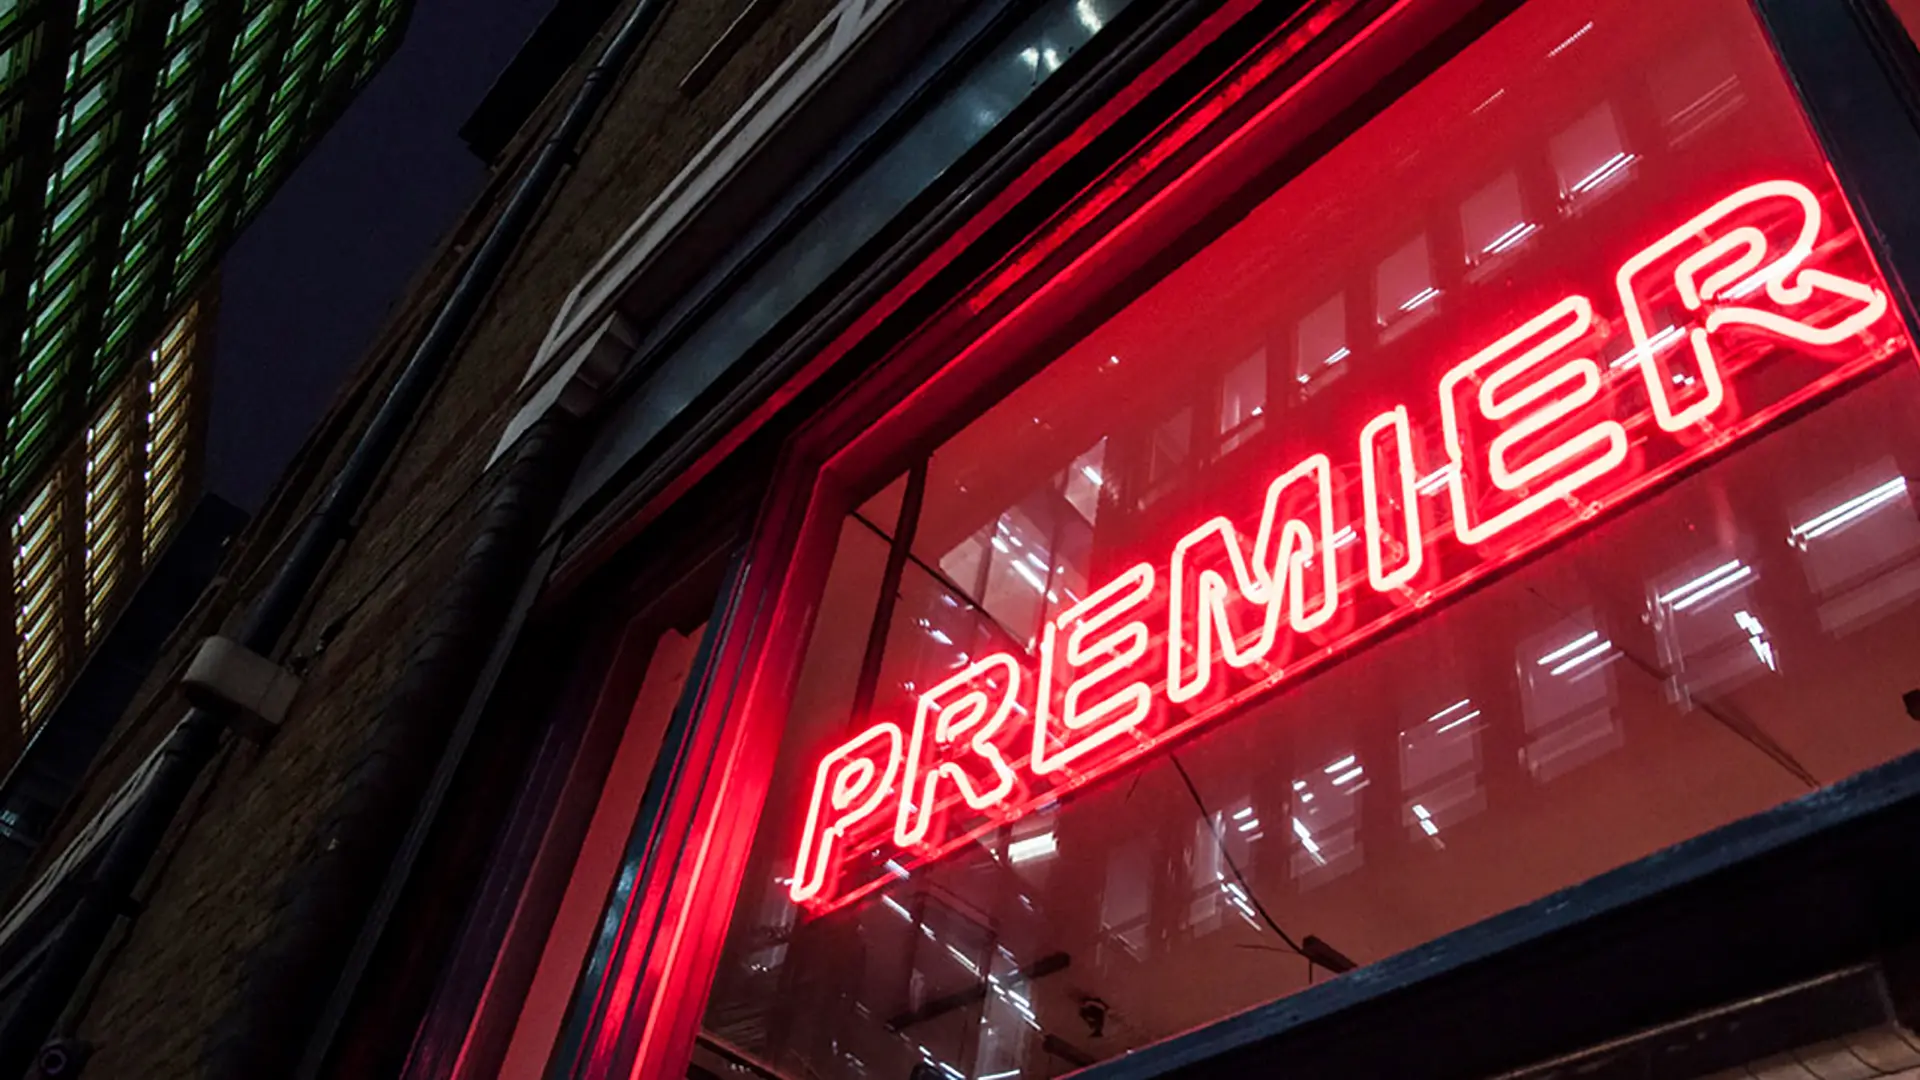 Premier logo in red neon above the front door